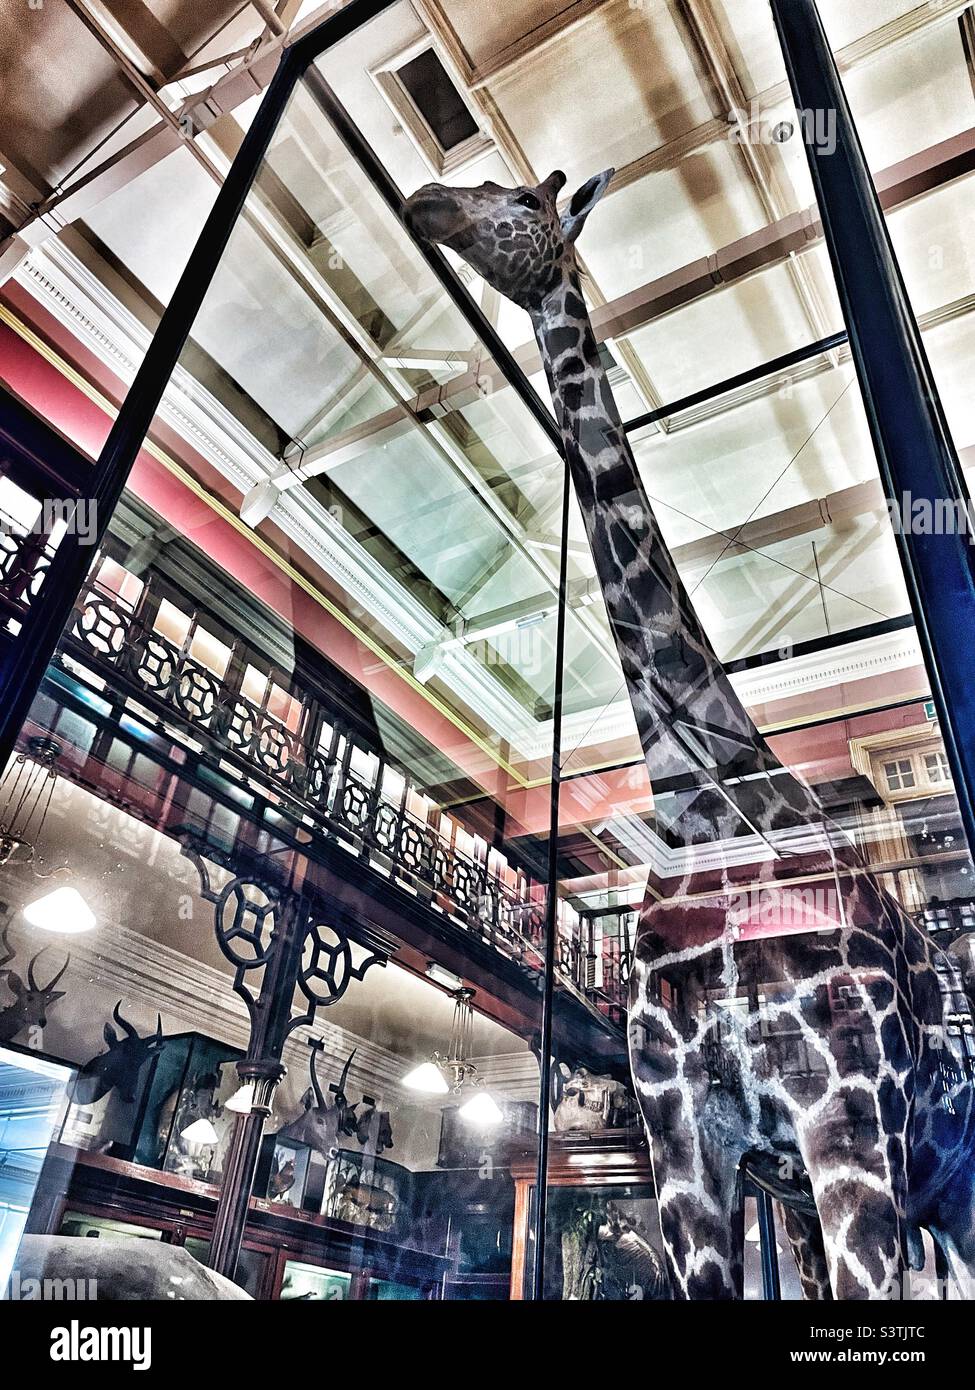 Ausgestellte Giraffe - Ipswich Museum, Ipswich, Suffolk, Großbritannien. Stockfoto